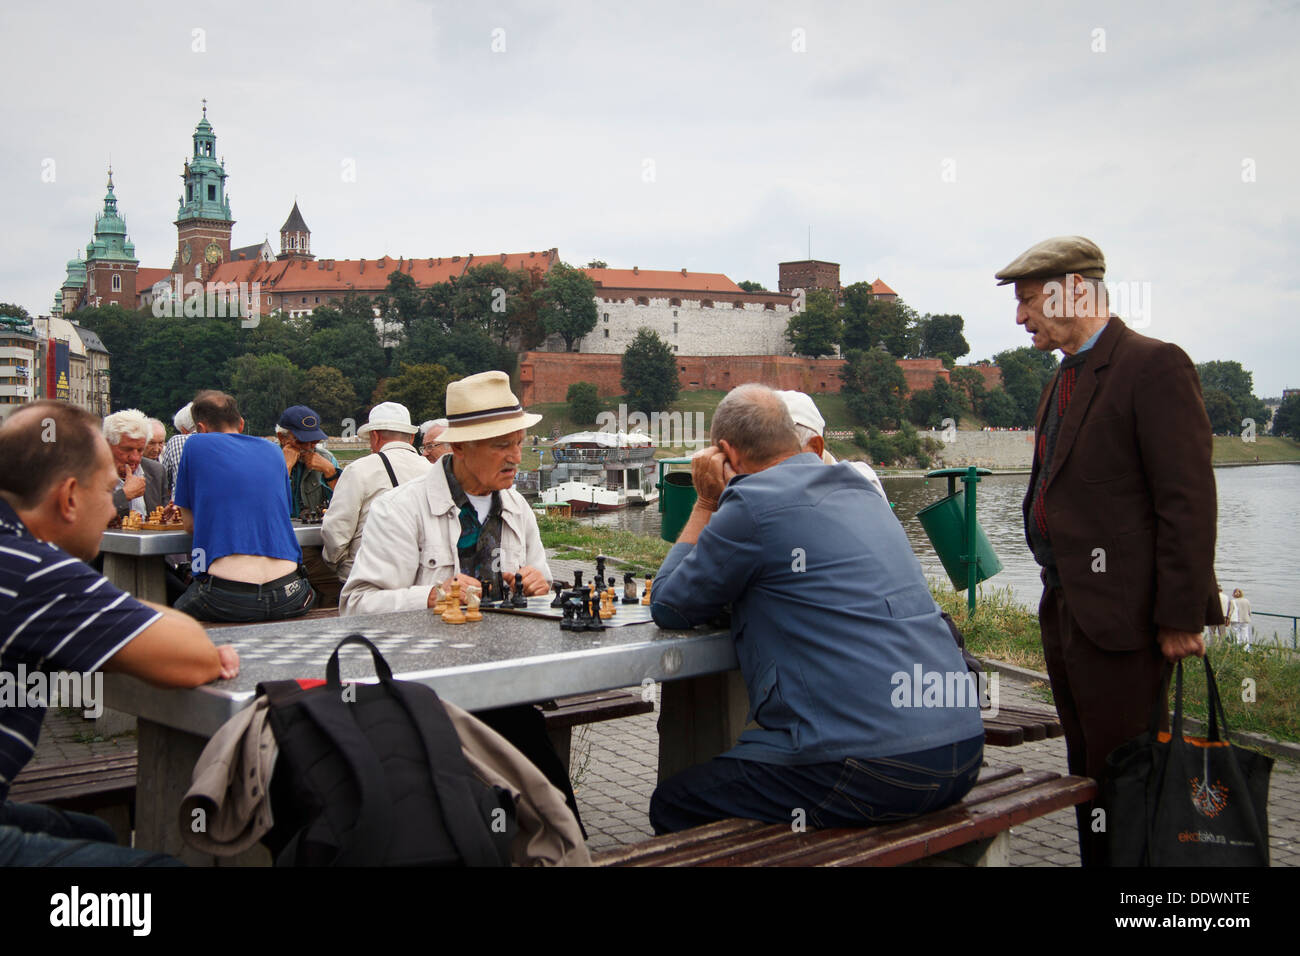 De vieux hommes jouant aux échecs à l'extérieur. Le château de Wawel du Roi dans l'arrière-plan. Cracovie, Pologne. Banque D'Images